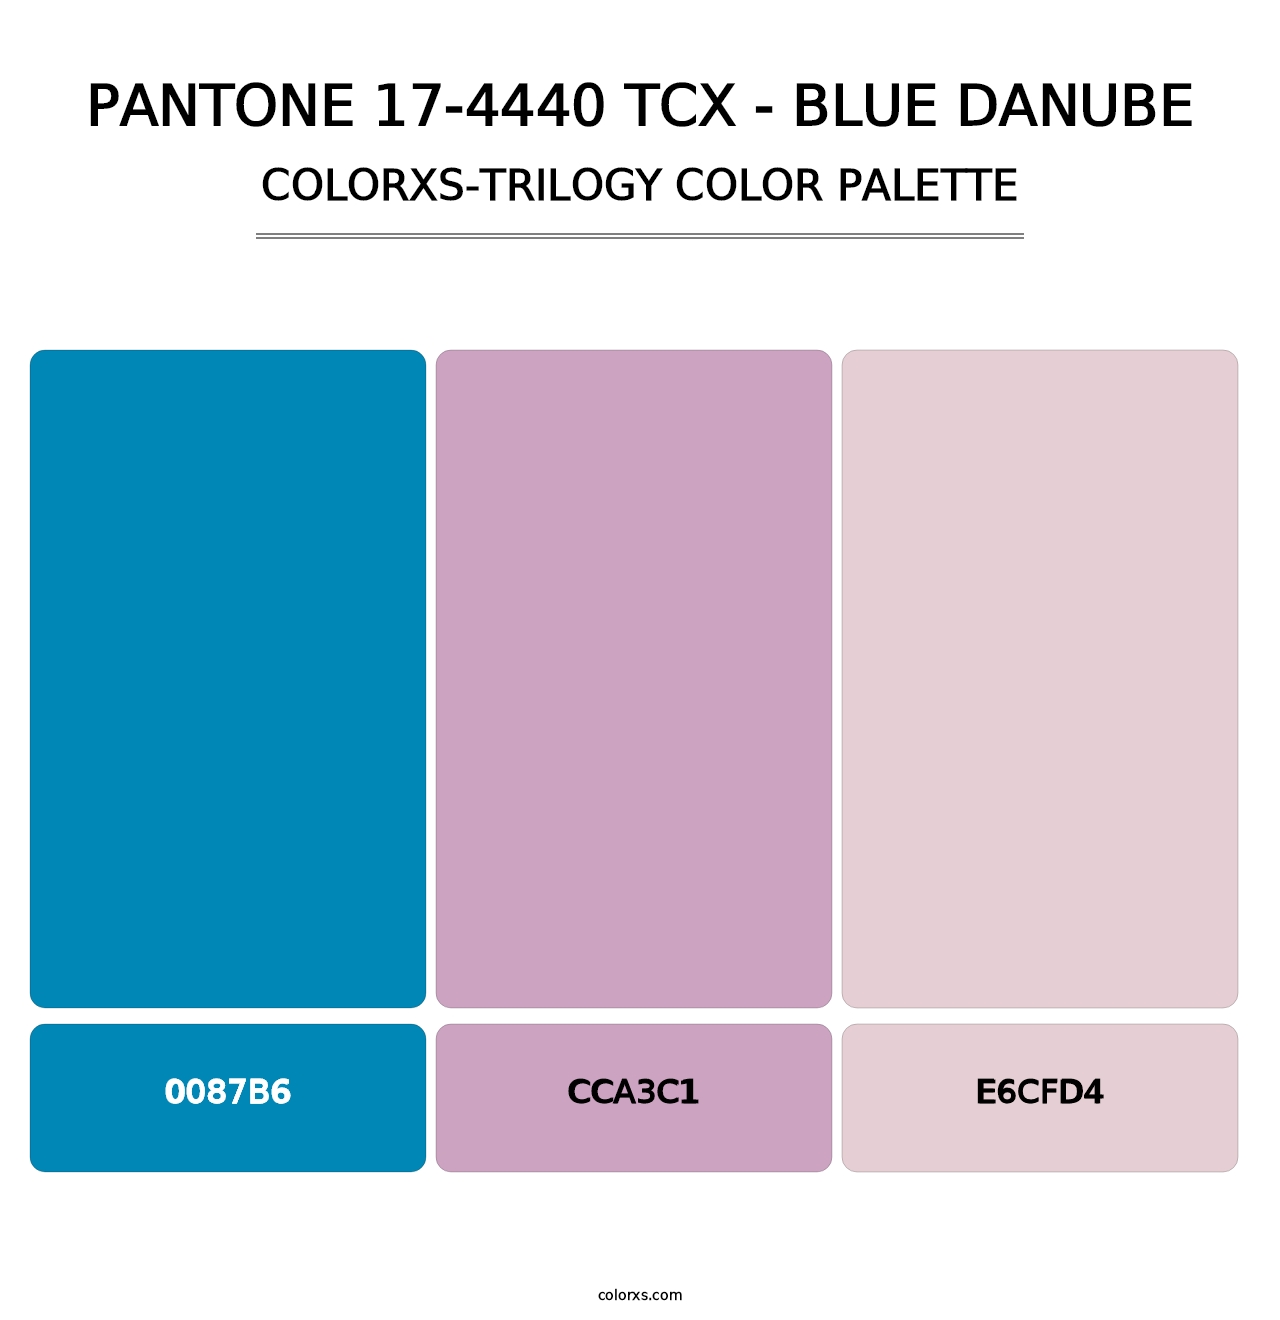 PANTONE 17-4440 TCX - Blue Danube - Colorxs Trilogy Palette